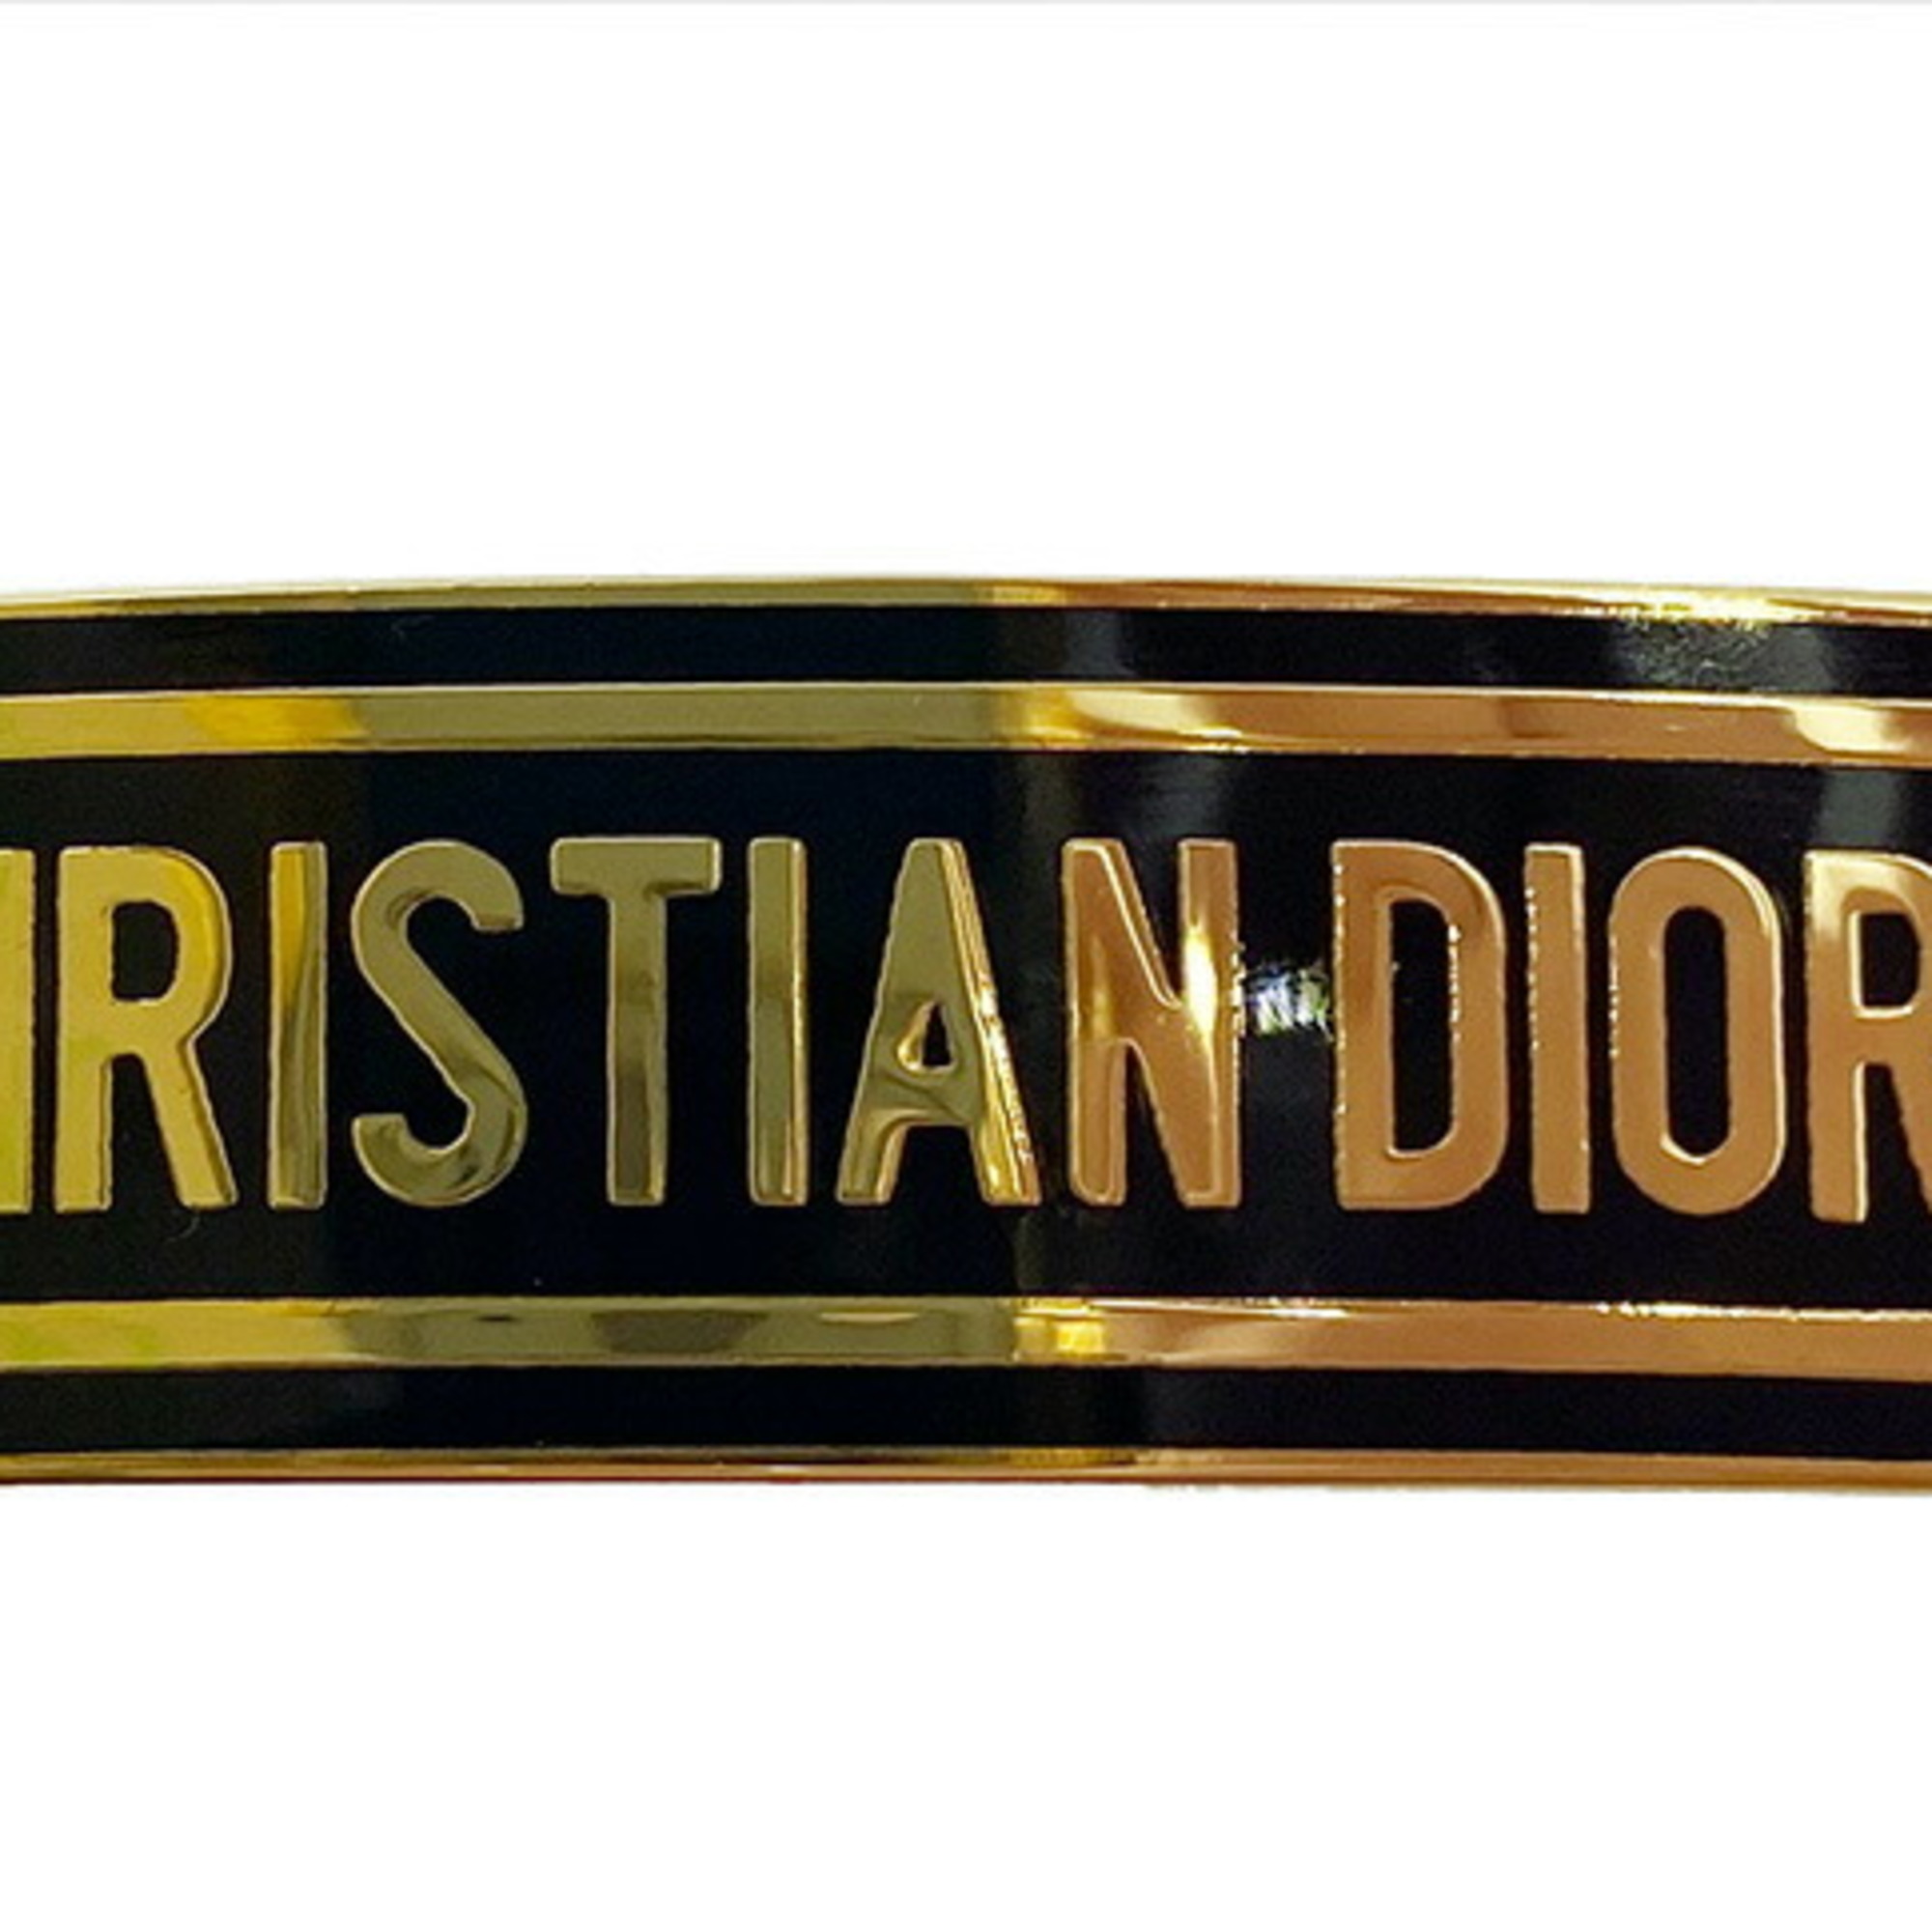 Christian Dior J'adior Hair Clip GP Gold Black Women's